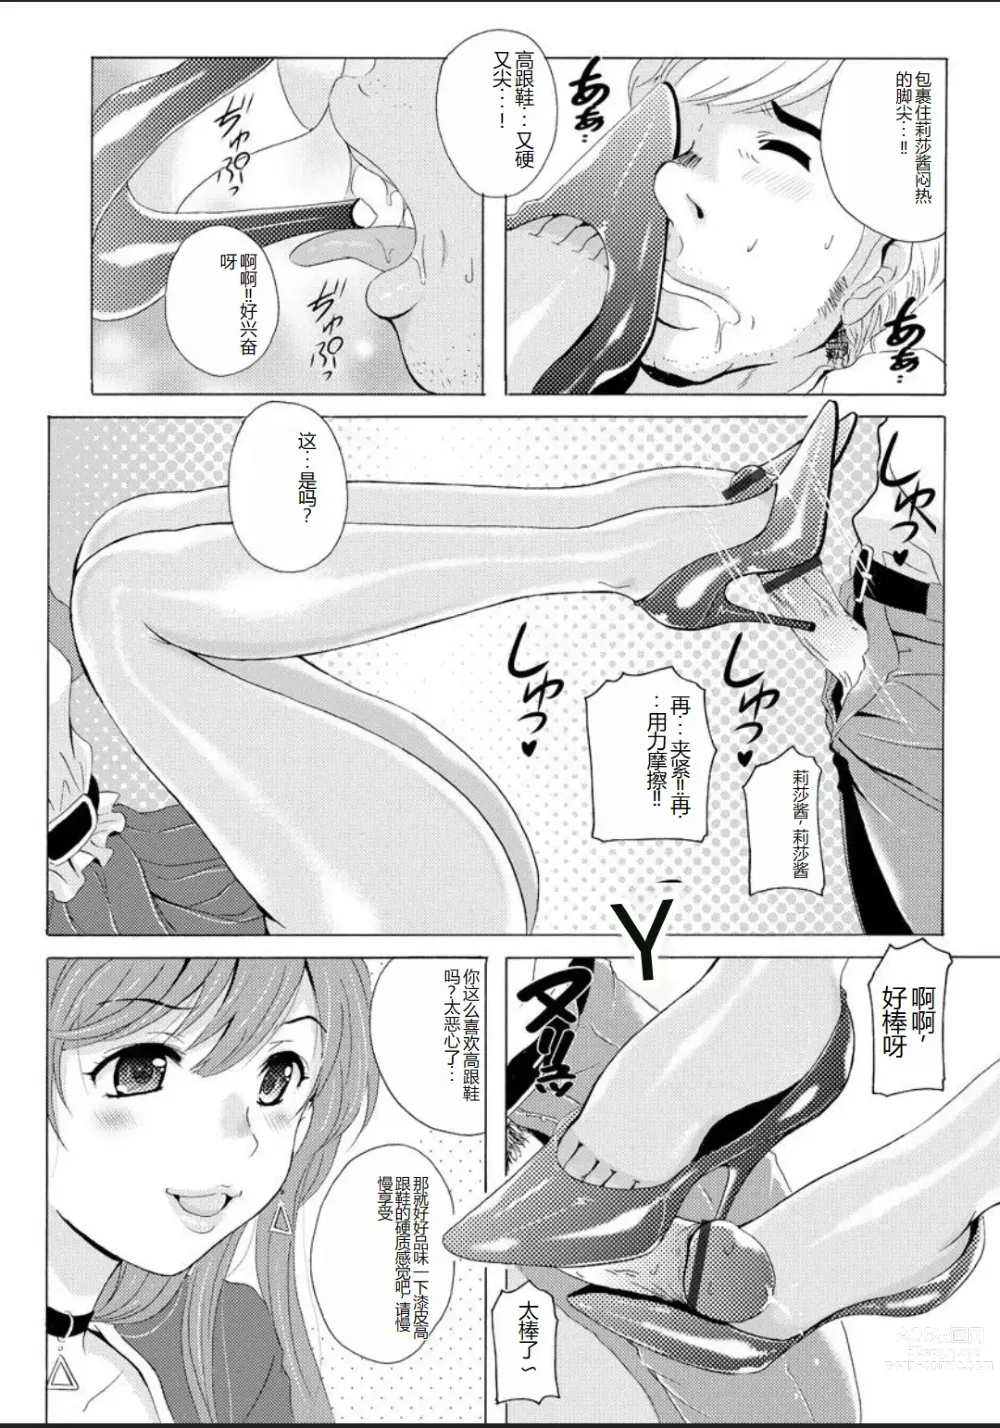 Page 7 of manga Seihuku Bikyaku 5 ～Ibento Konpanion Risa no Mu Re Ta Tizyo Pansuto